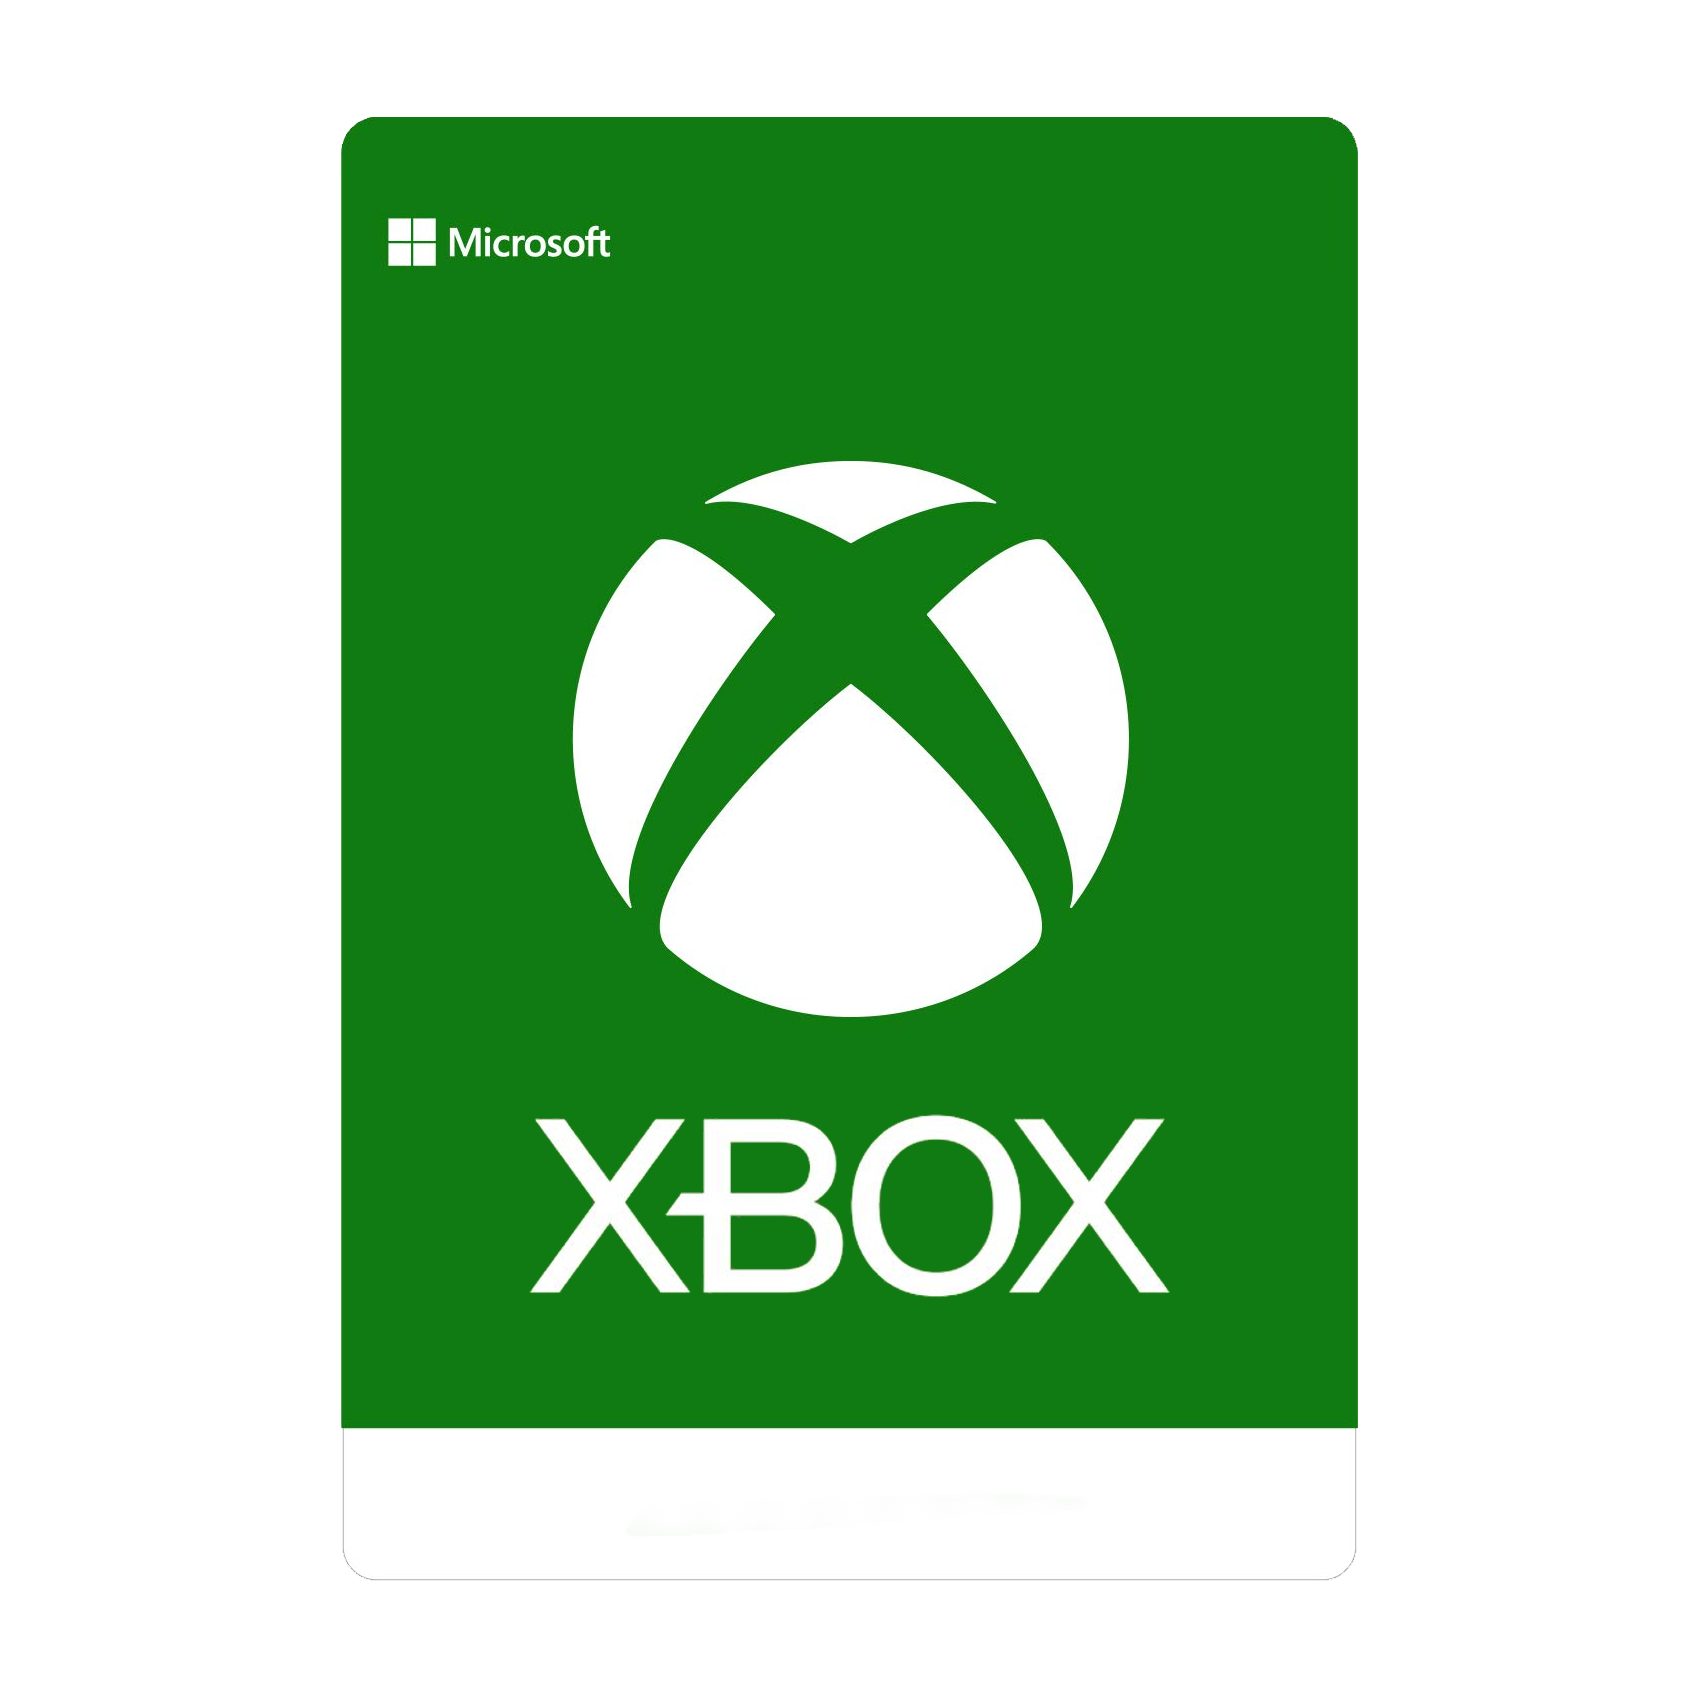 Microsoft Xbox Gift Card